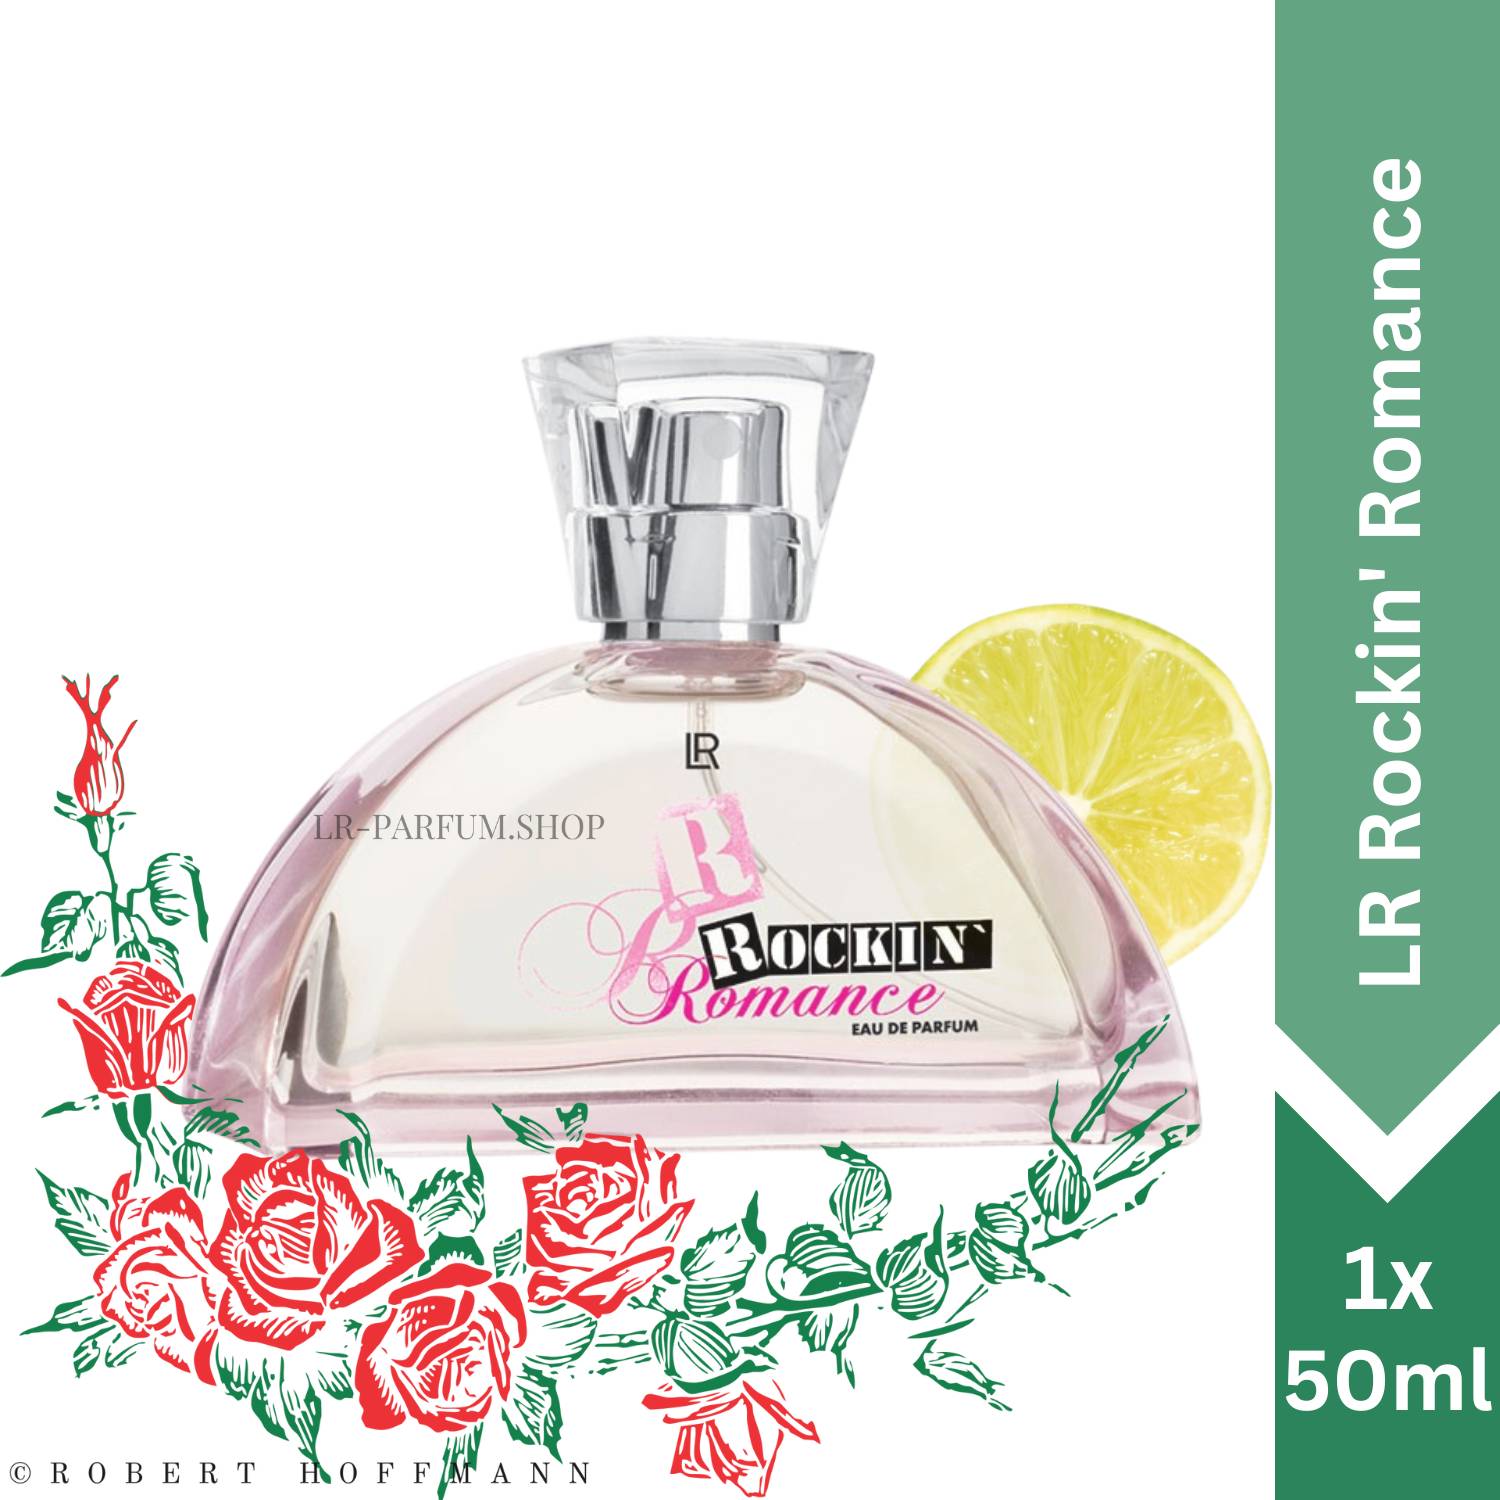 LR Rockin` Romance - Eau de Parfum 50ml - LR-Parfum.shop